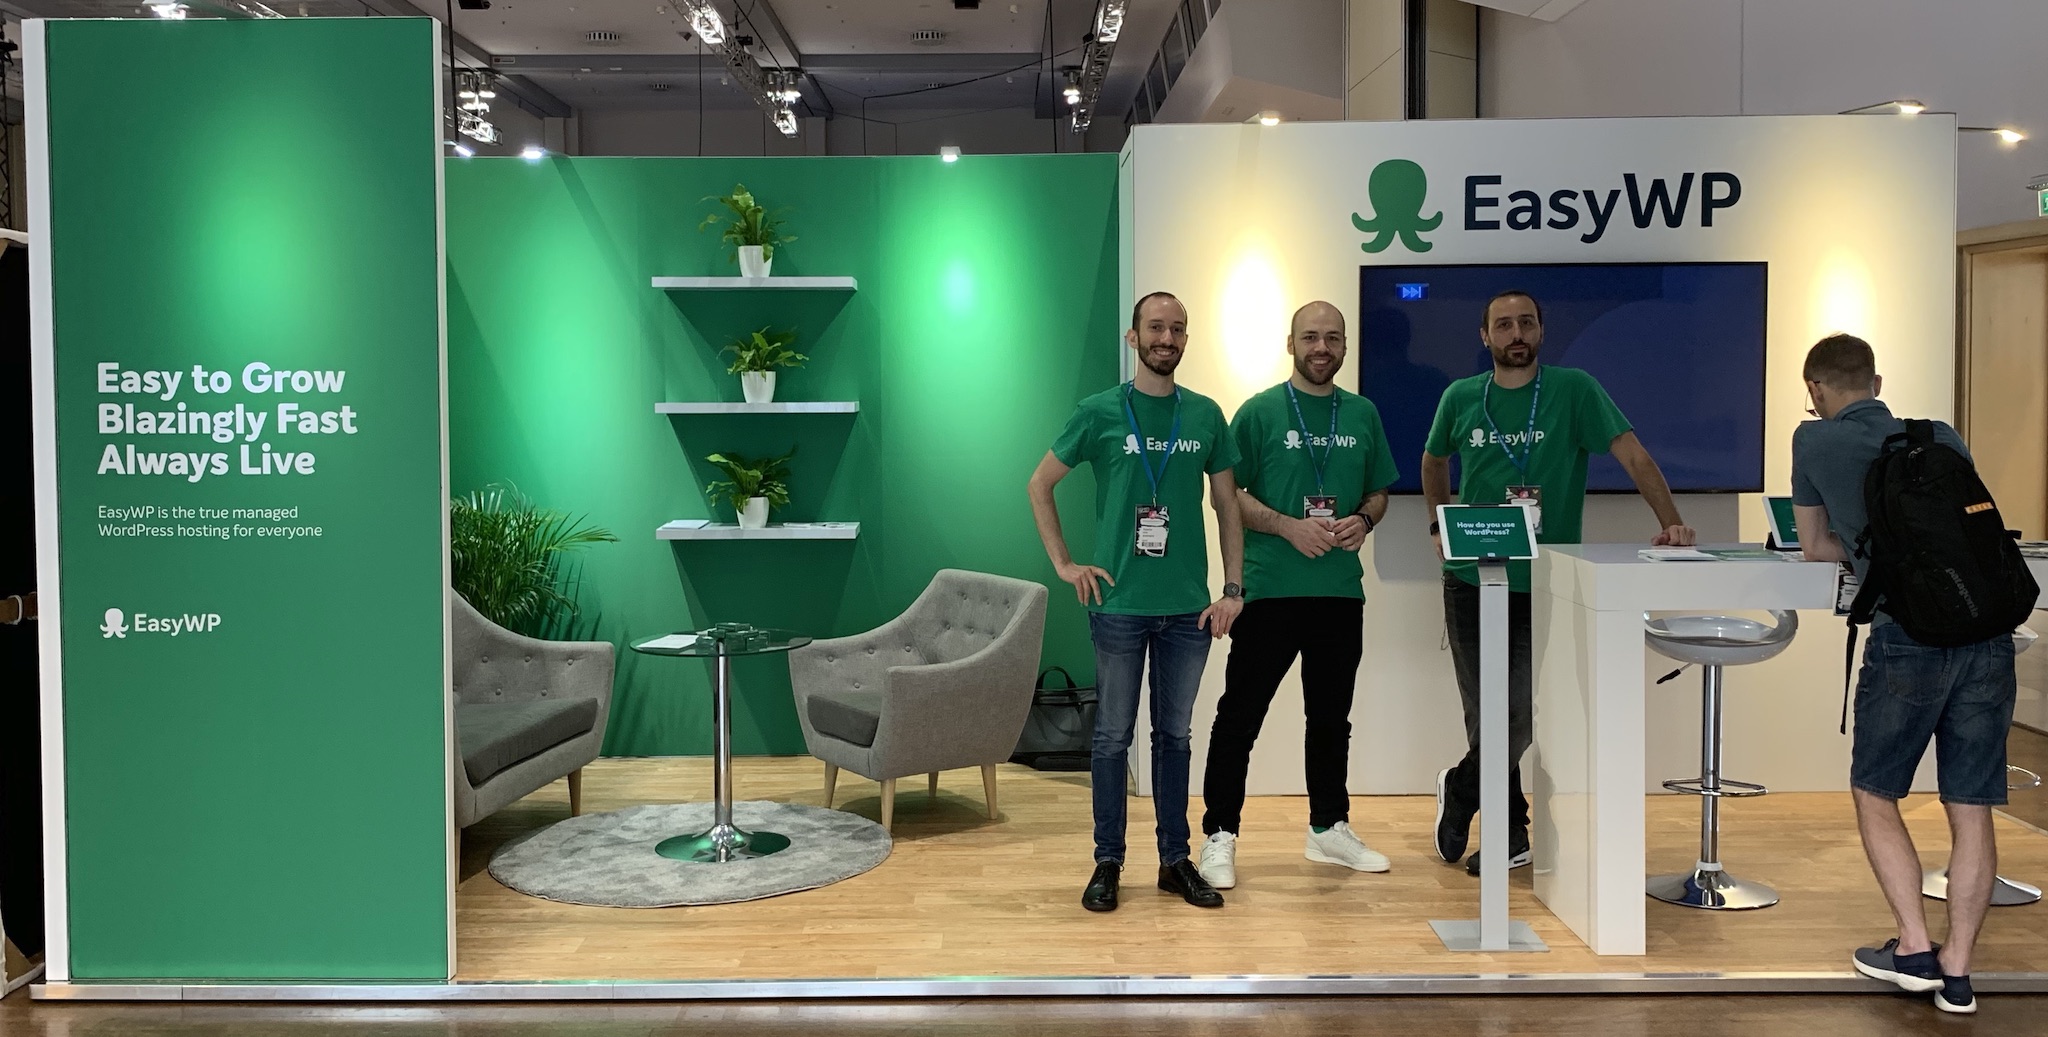 EasyWP @ WordCamp Europe 2019